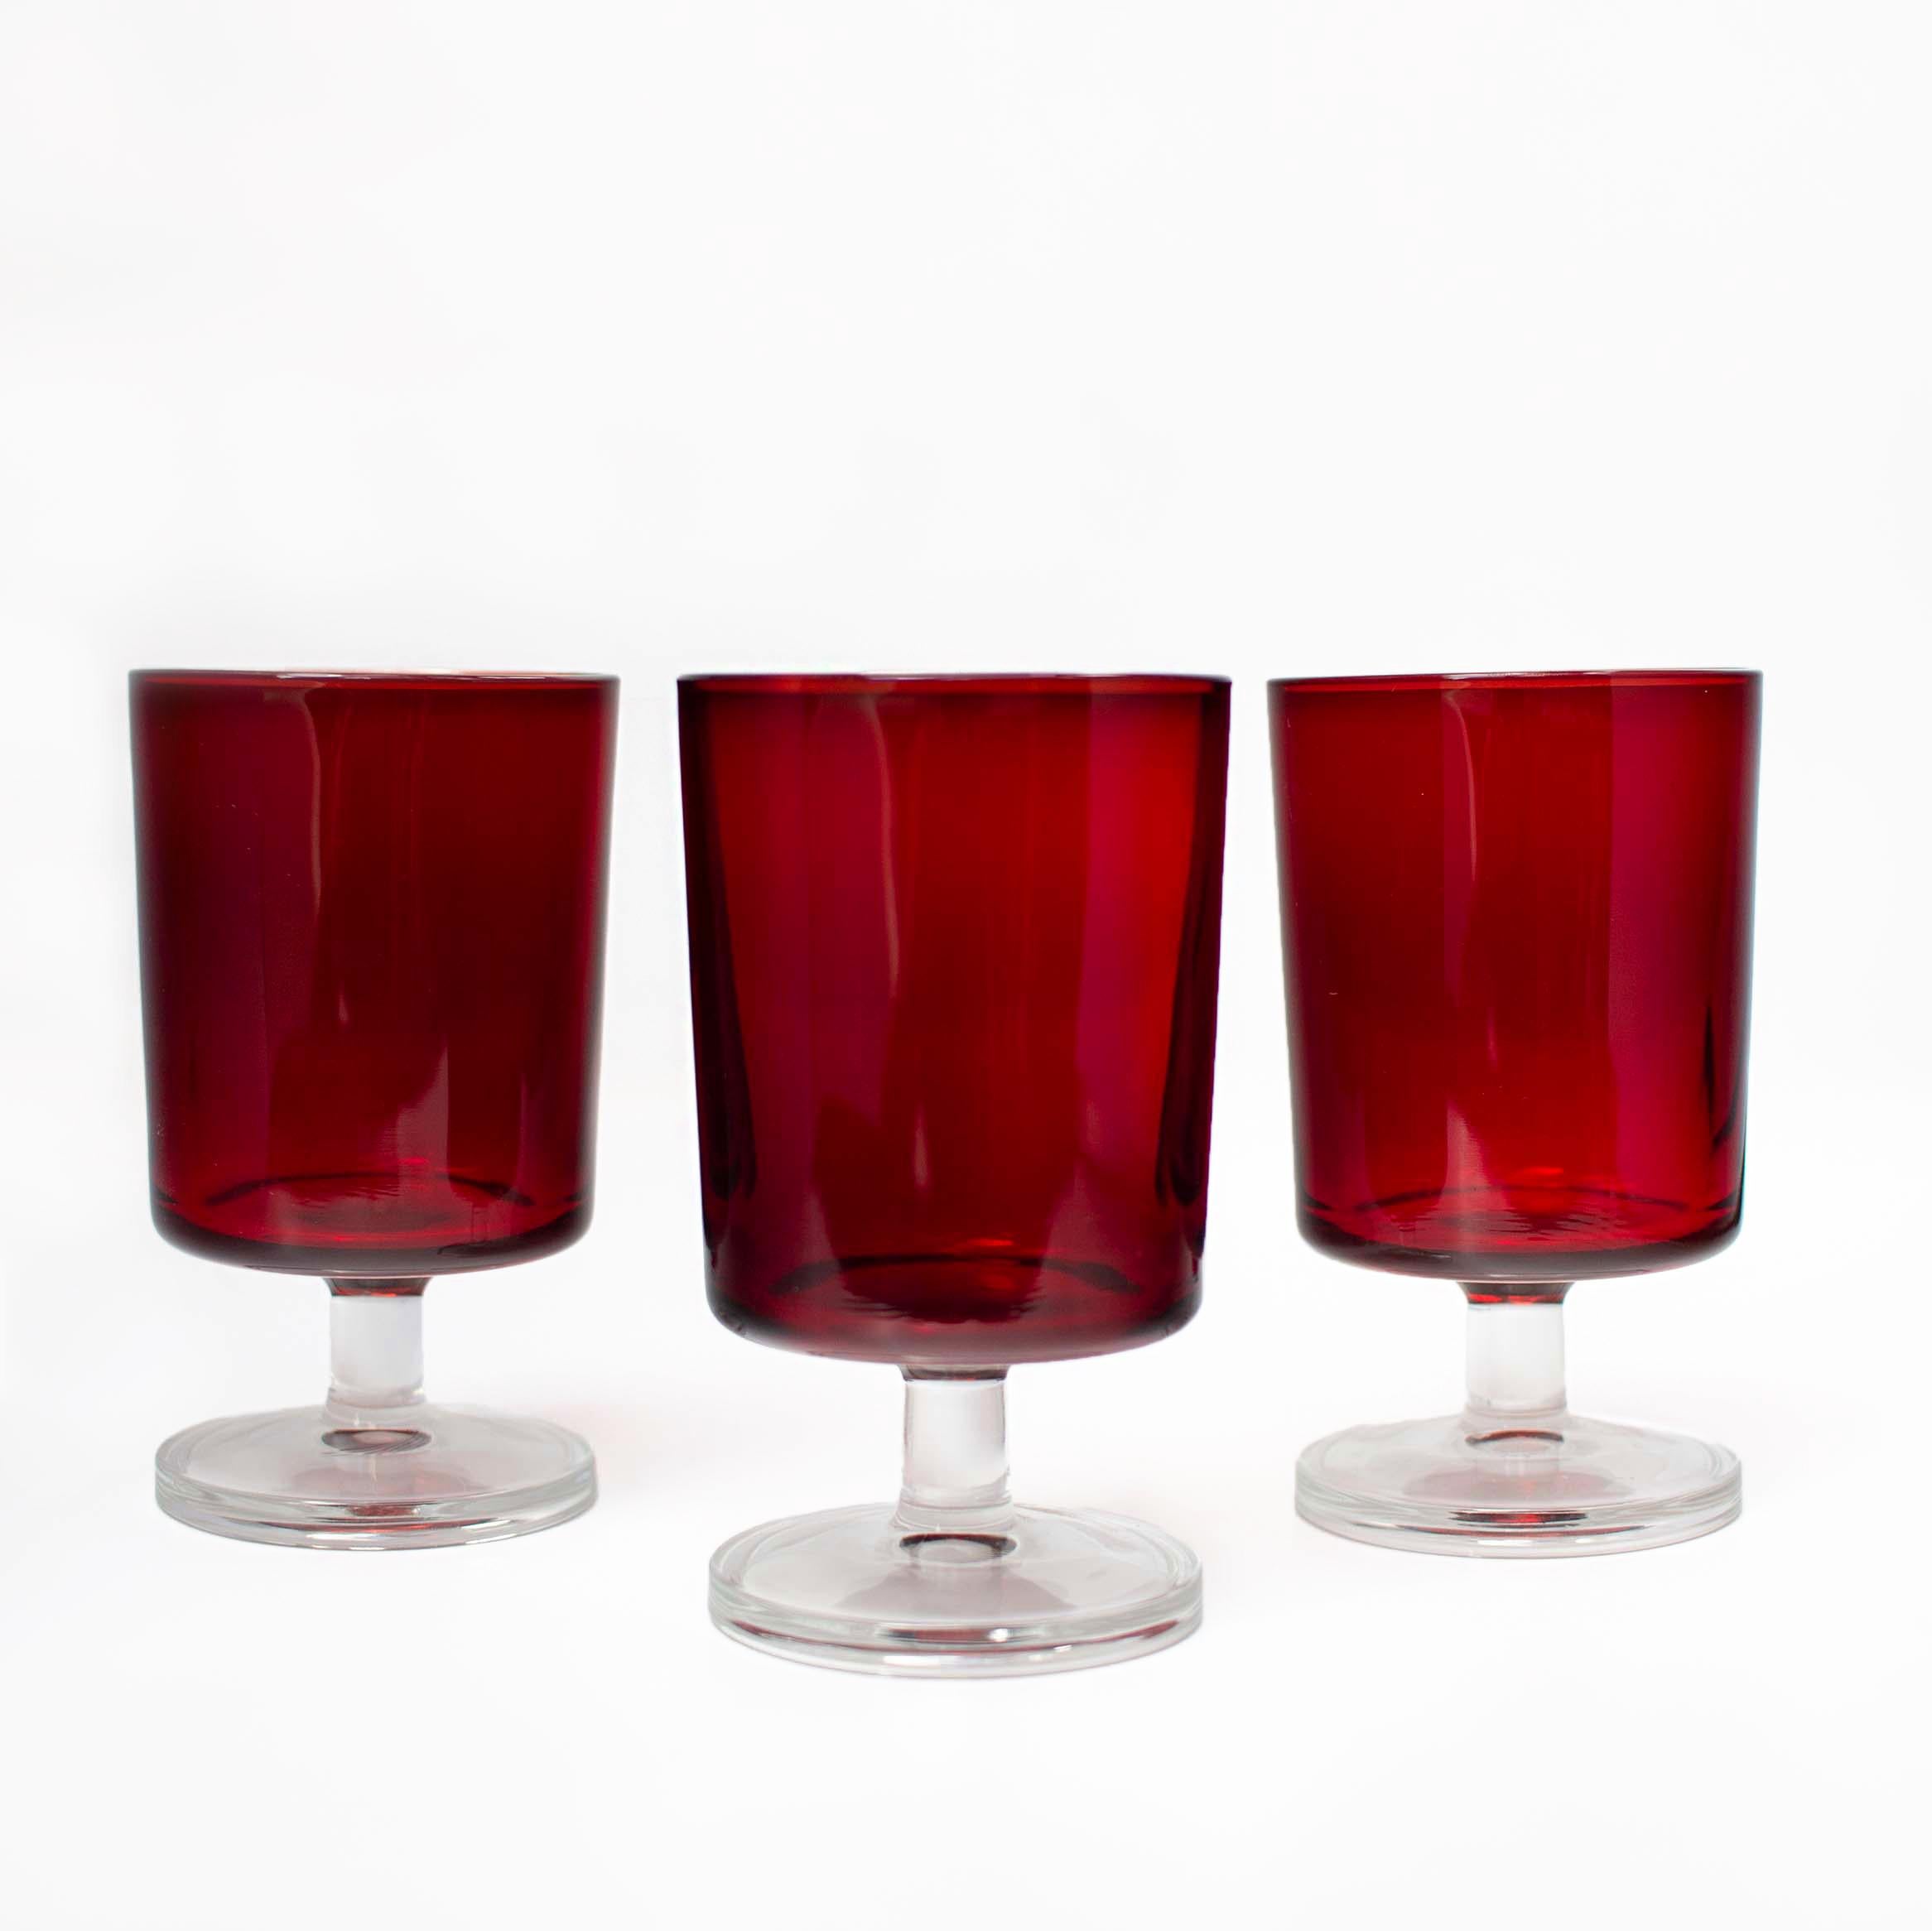 Verres à cordial Arcoroc rubis de J.G. Durand

Fabriqué en France
Ensemble de 3
2.5 x 4.5 in / chaque
1960s
Verre

Un ensemble de trois verres à cordial Arcoroc à pied transparent, d'un rouge rubis profond, parfaits pour compléter un ensemble de